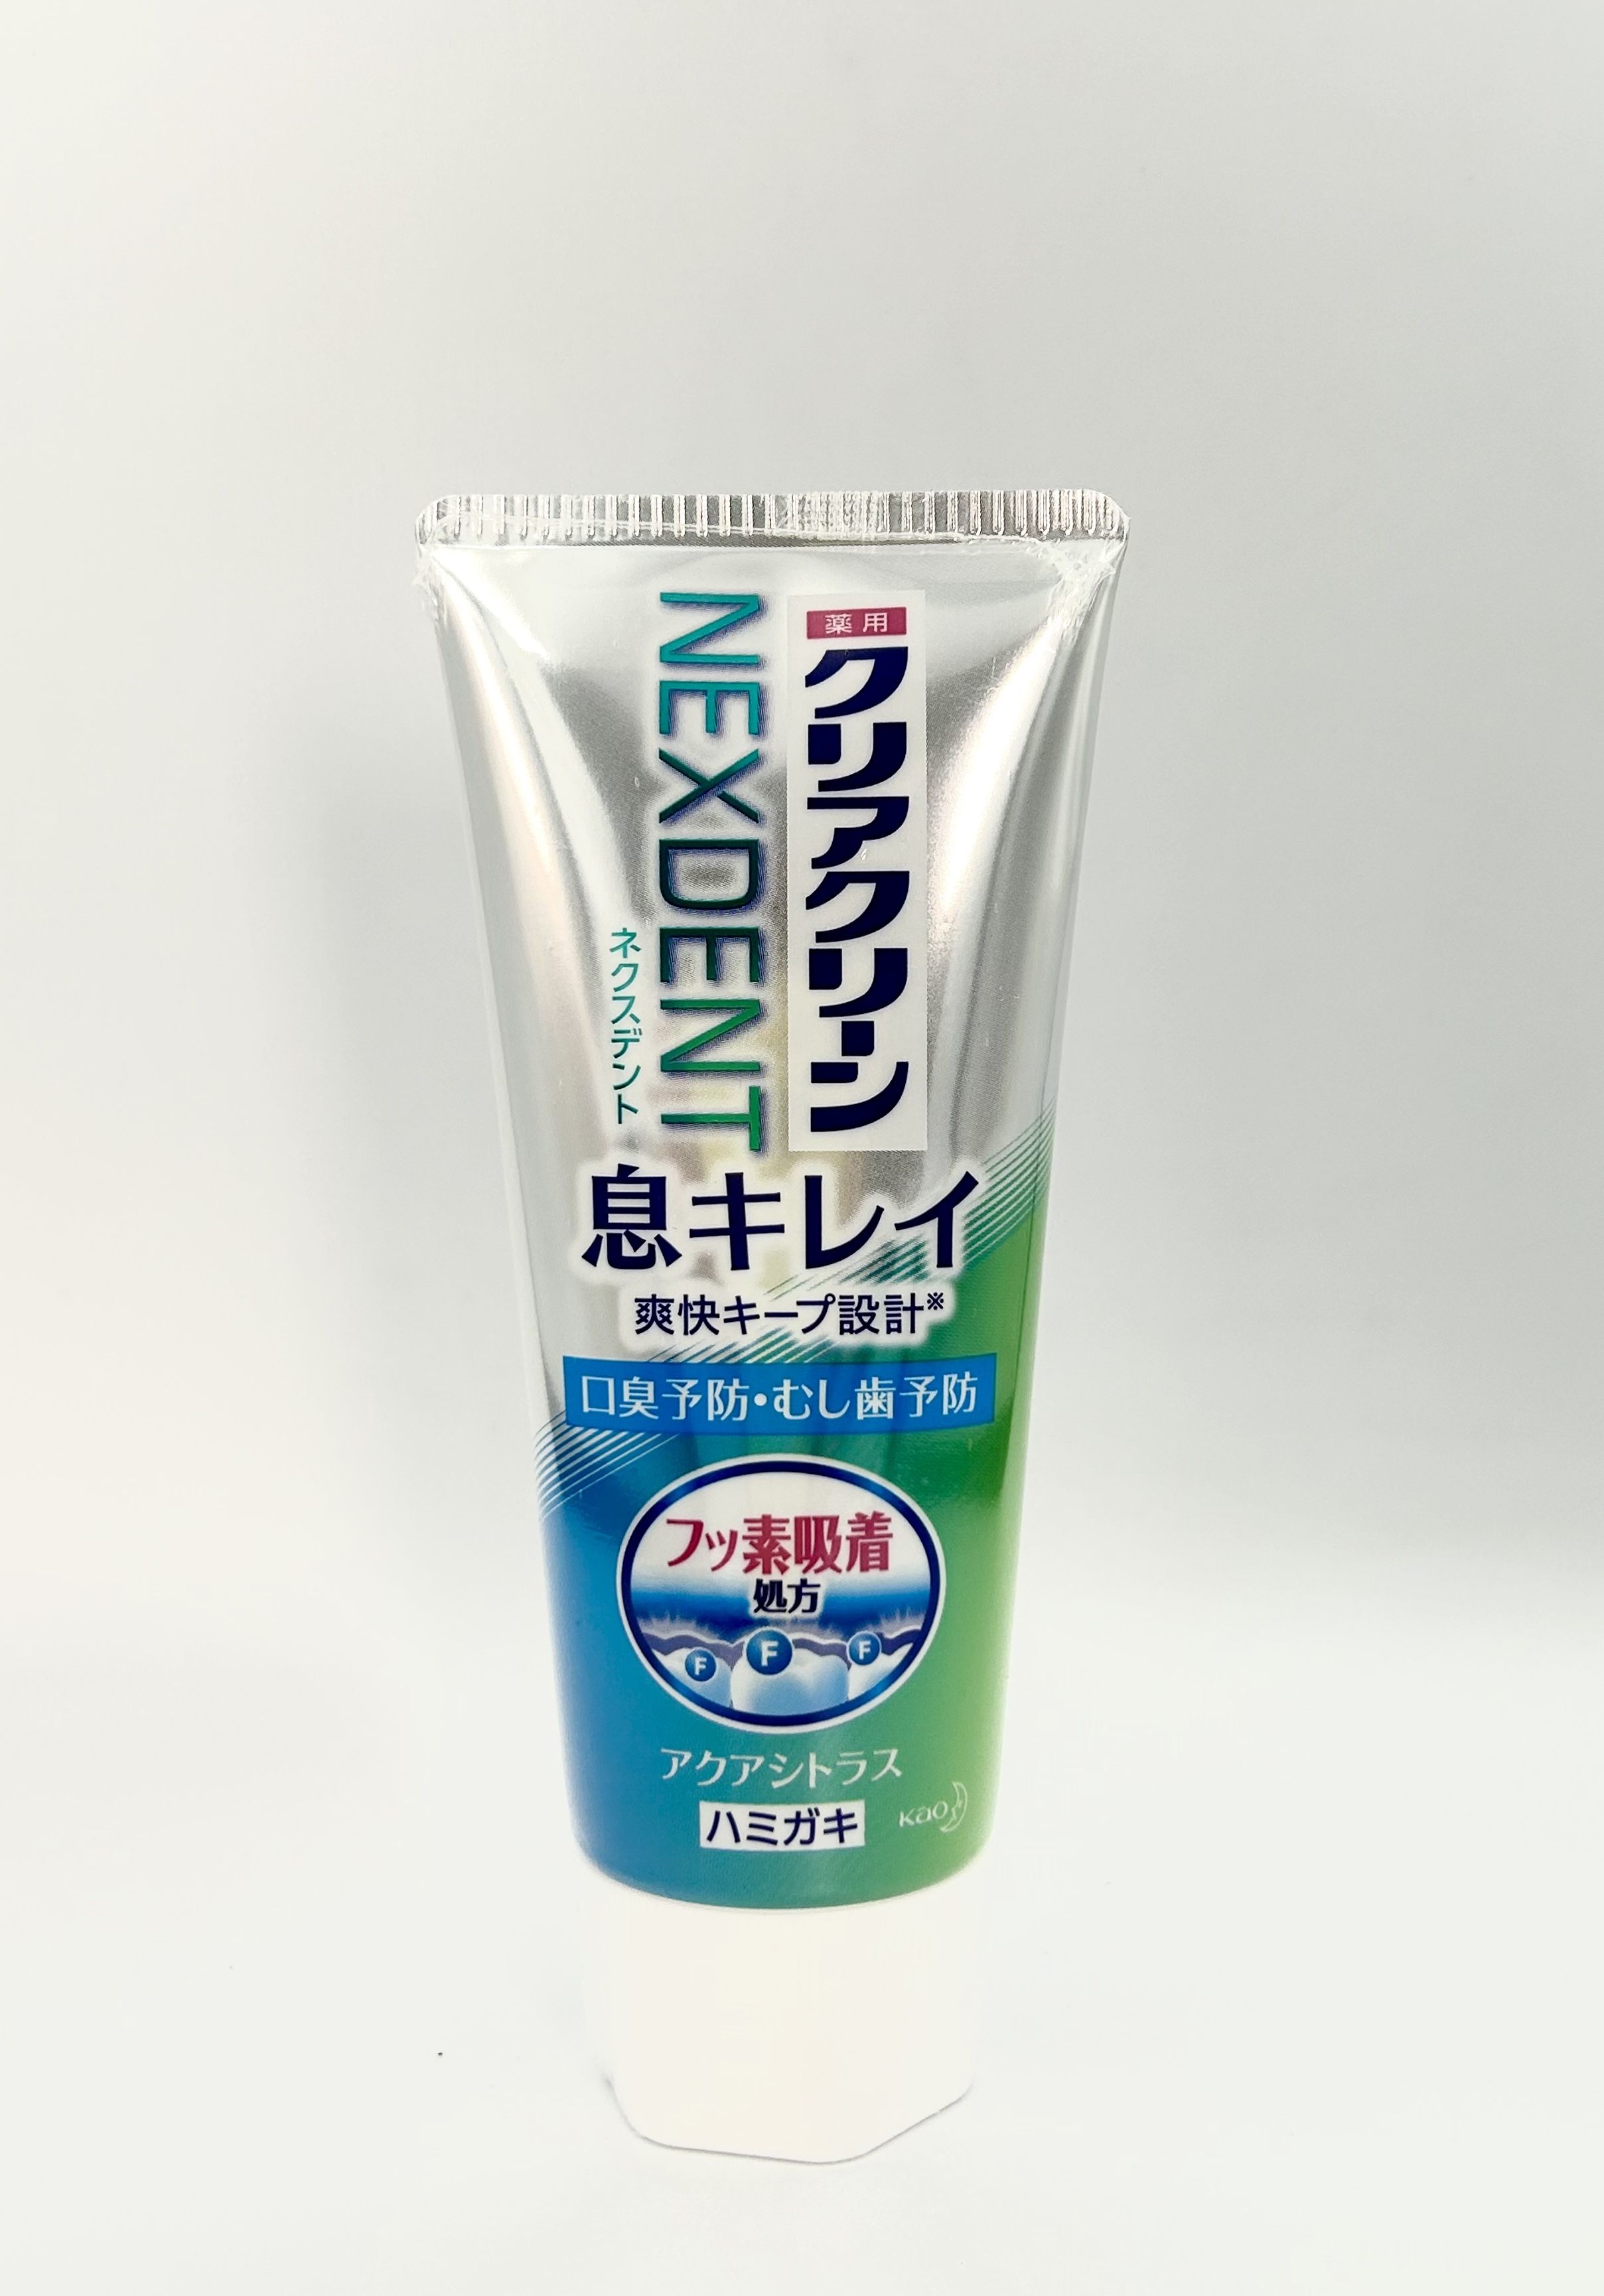 Kao Clear Clean Nexdent Breath Clean Aqua Citrus Лечебно-профилактическая зубная паста для свежести дыхания Сочные цитрусы 110 гр